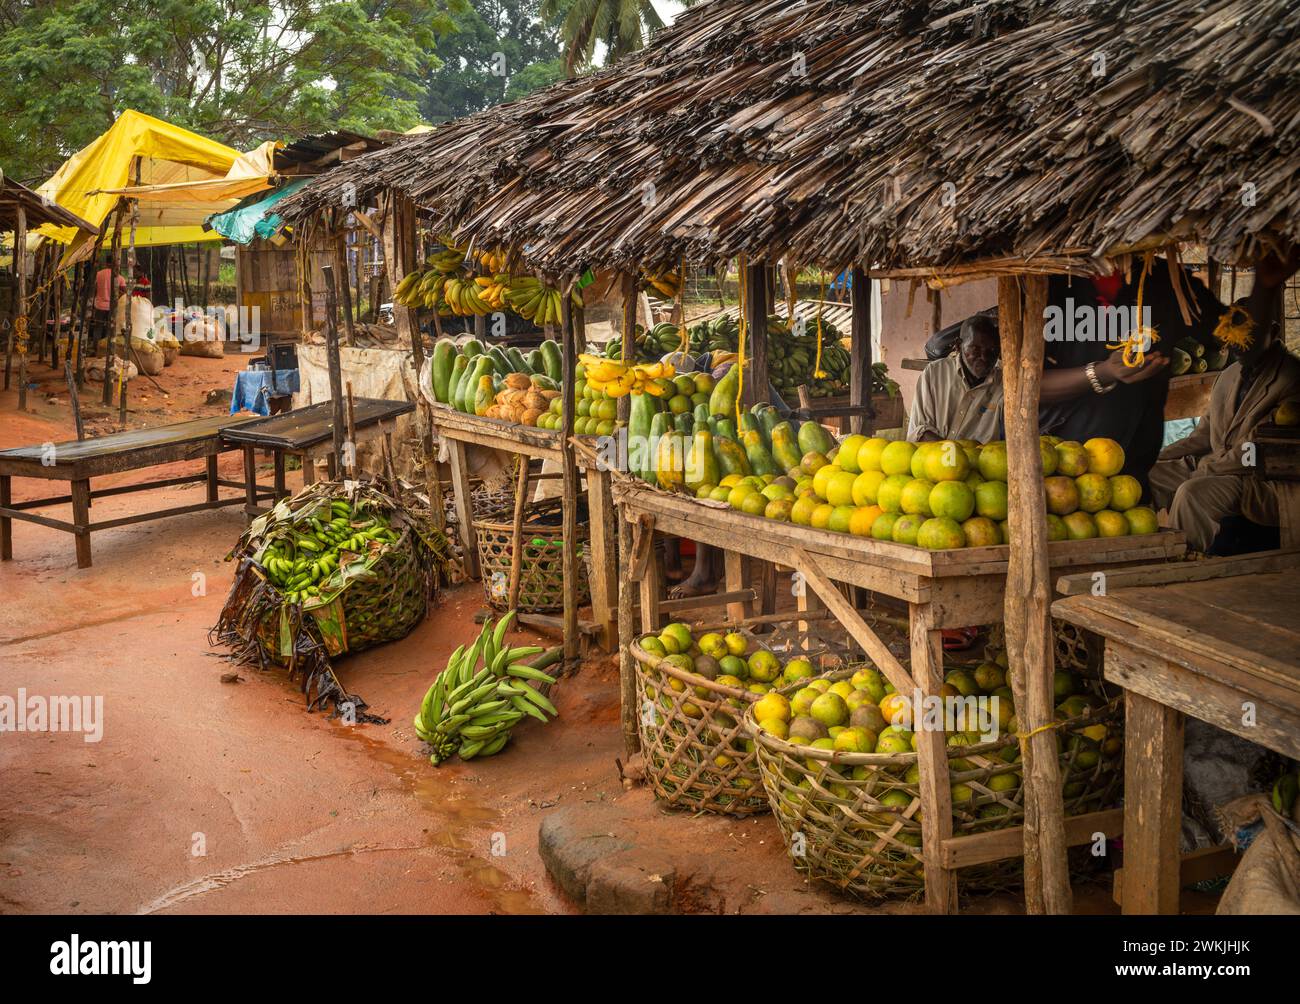 Una stalla che vende frutta al mercato di Msanga, nella Tanzania rurale Foto Stock